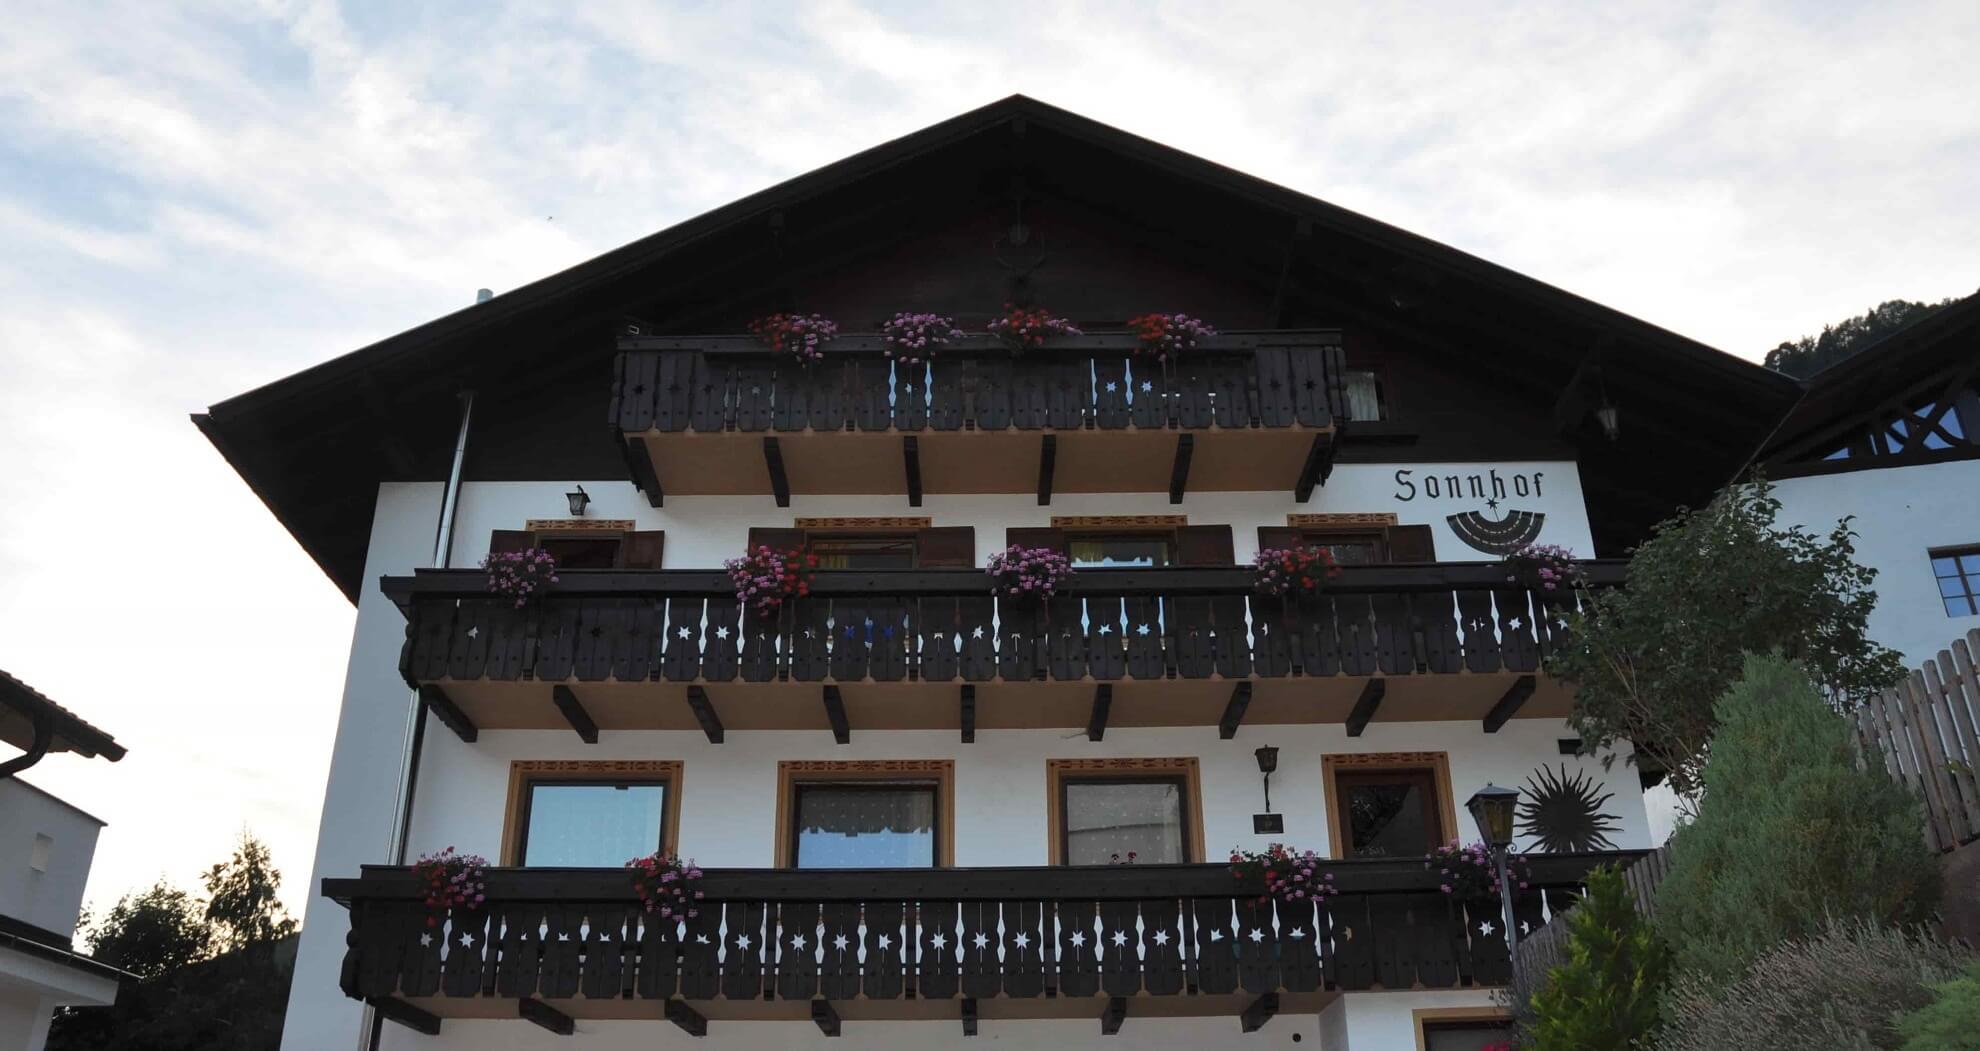 Urlaub mit wenig Geld im Sonnhof in Südtirol